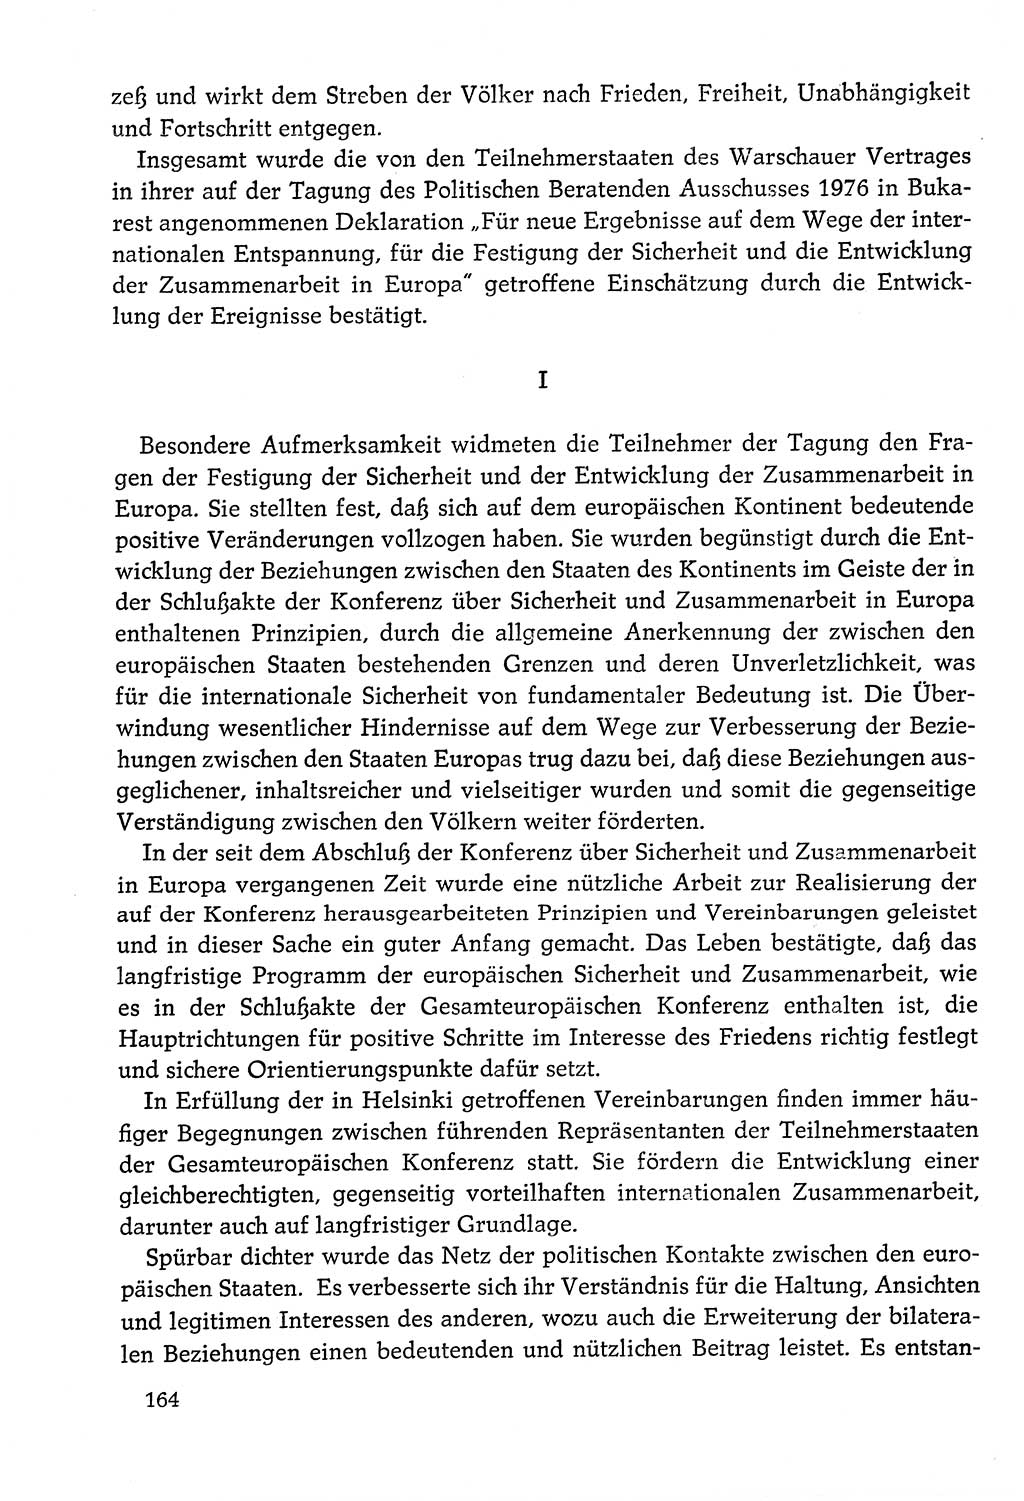 Dokumente der Sozialistischen Einheitspartei Deutschlands (SED) [Deutsche Demokratische Republik (DDR)] 1978-1979, Seite 164 (Dok. SED DDR 1978-1979, S. 164)